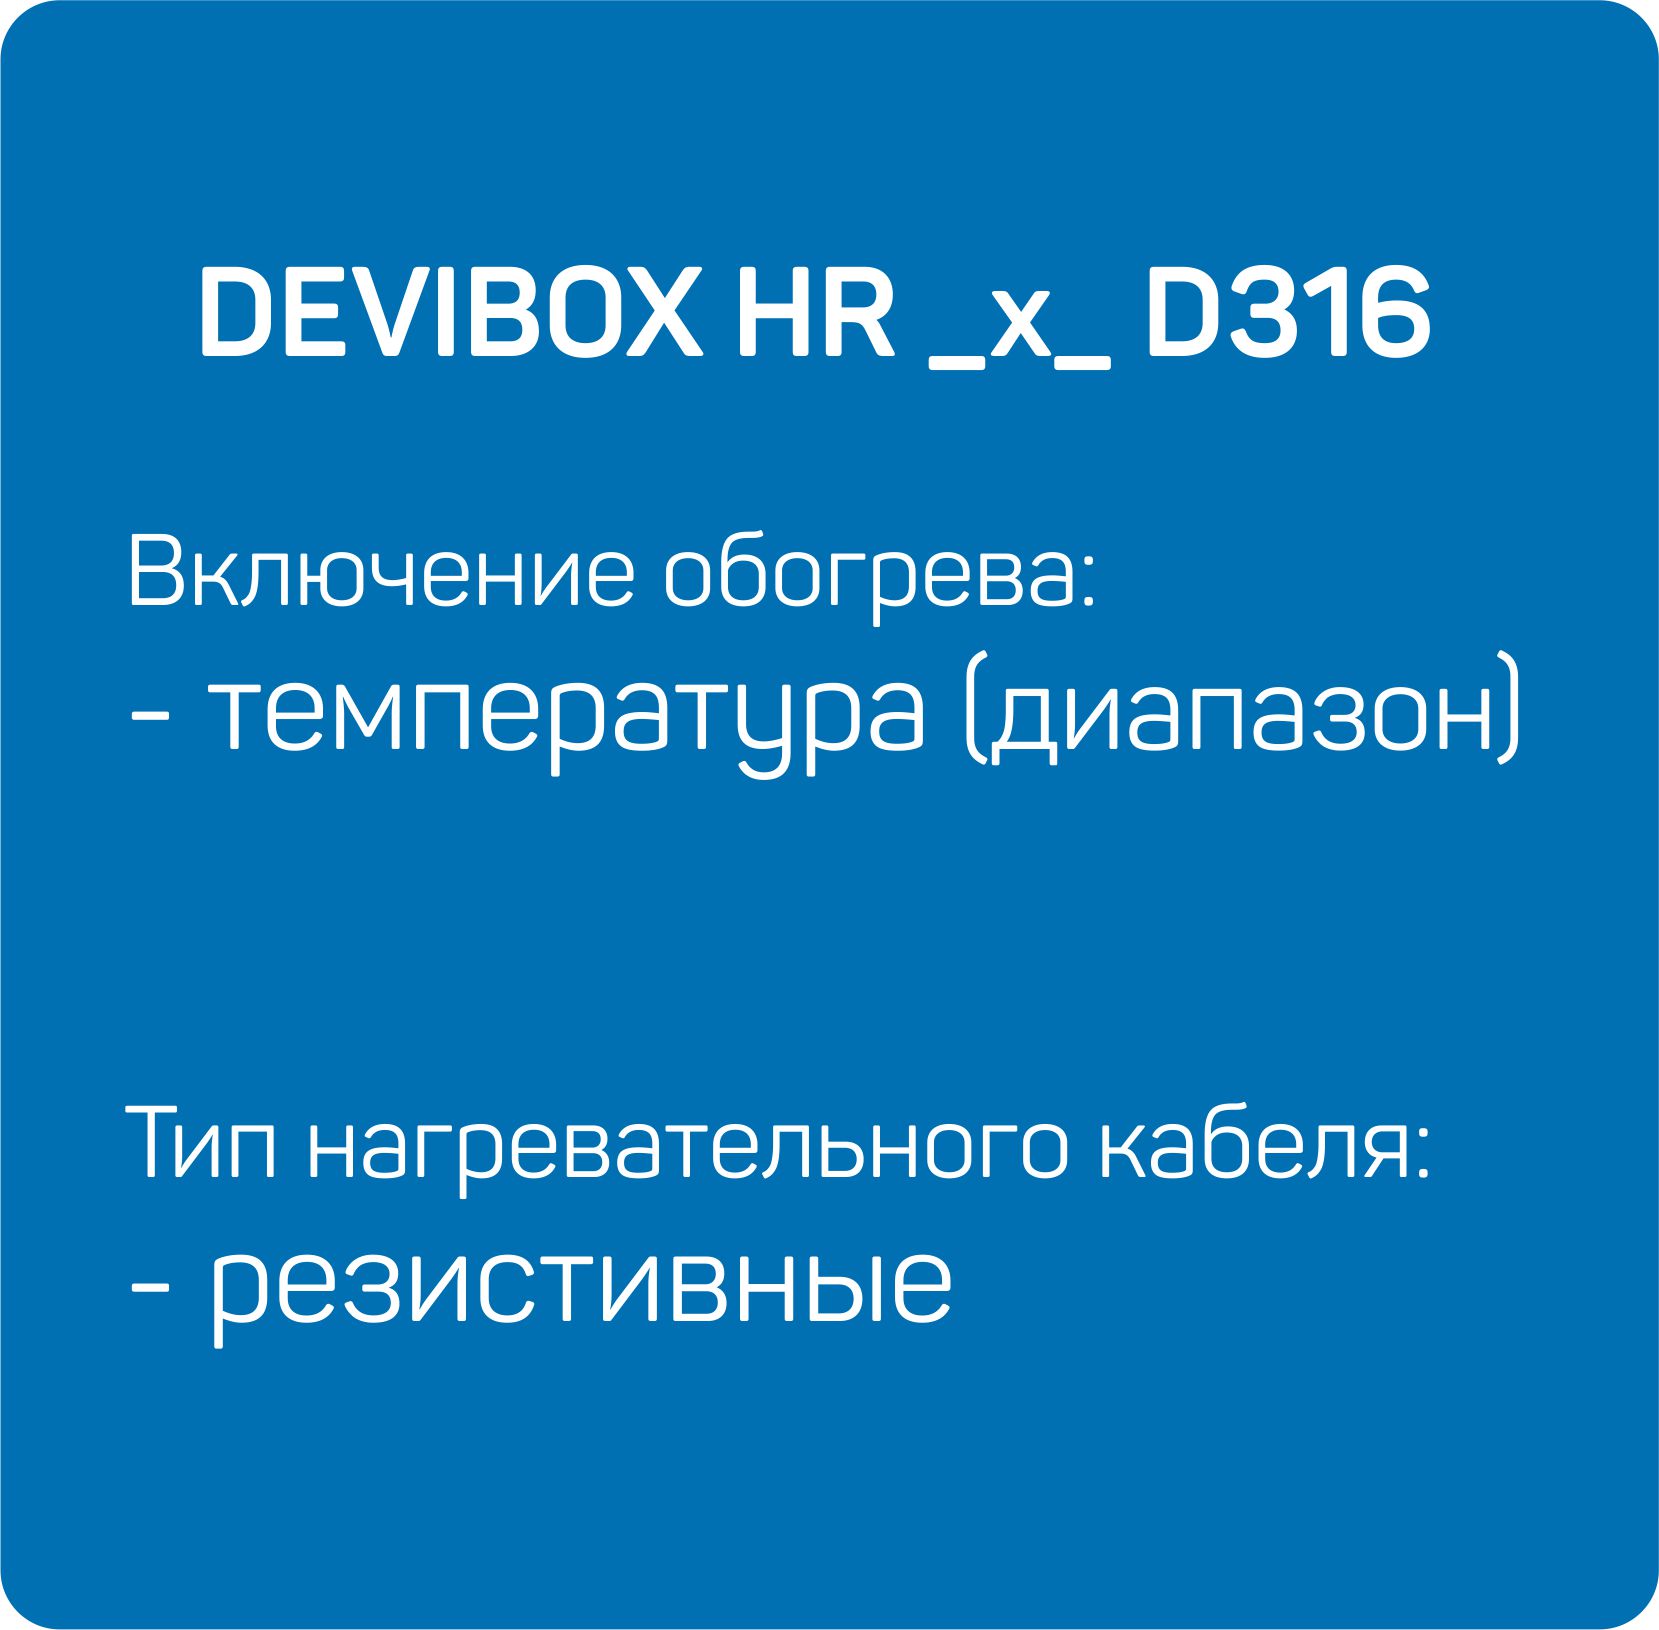 HR _x_ D316